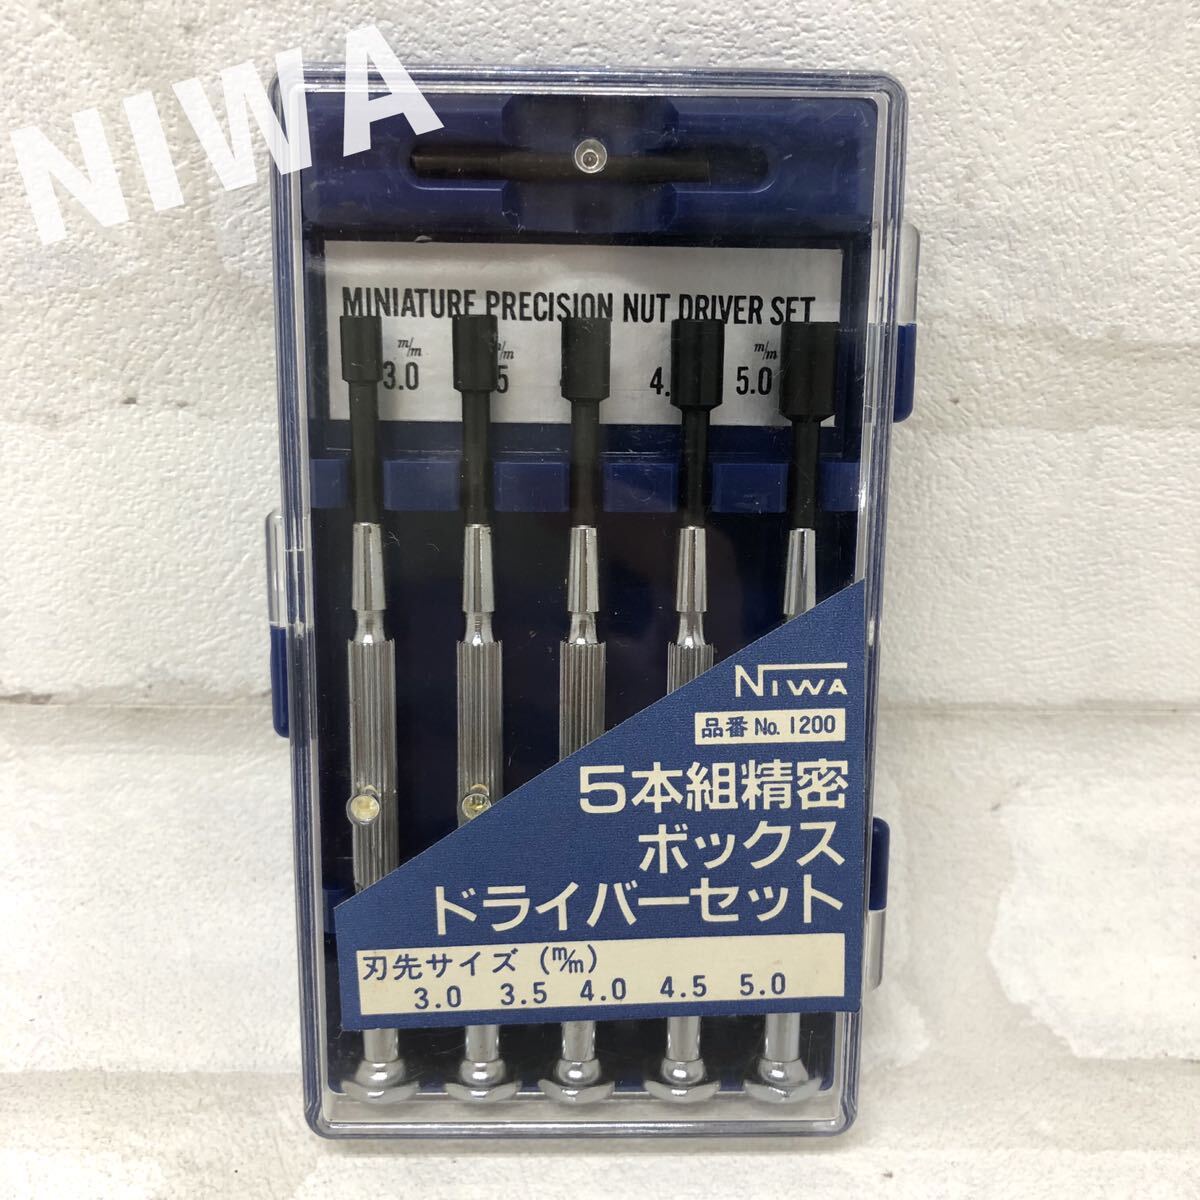 T■③ NIWA ニワ 5本組精密ボックスドライバーセット No.1200 刃先3.0〜5.0m/m ミニチュア プレシジョン ナット ハンドツール 工具 ケースの画像1